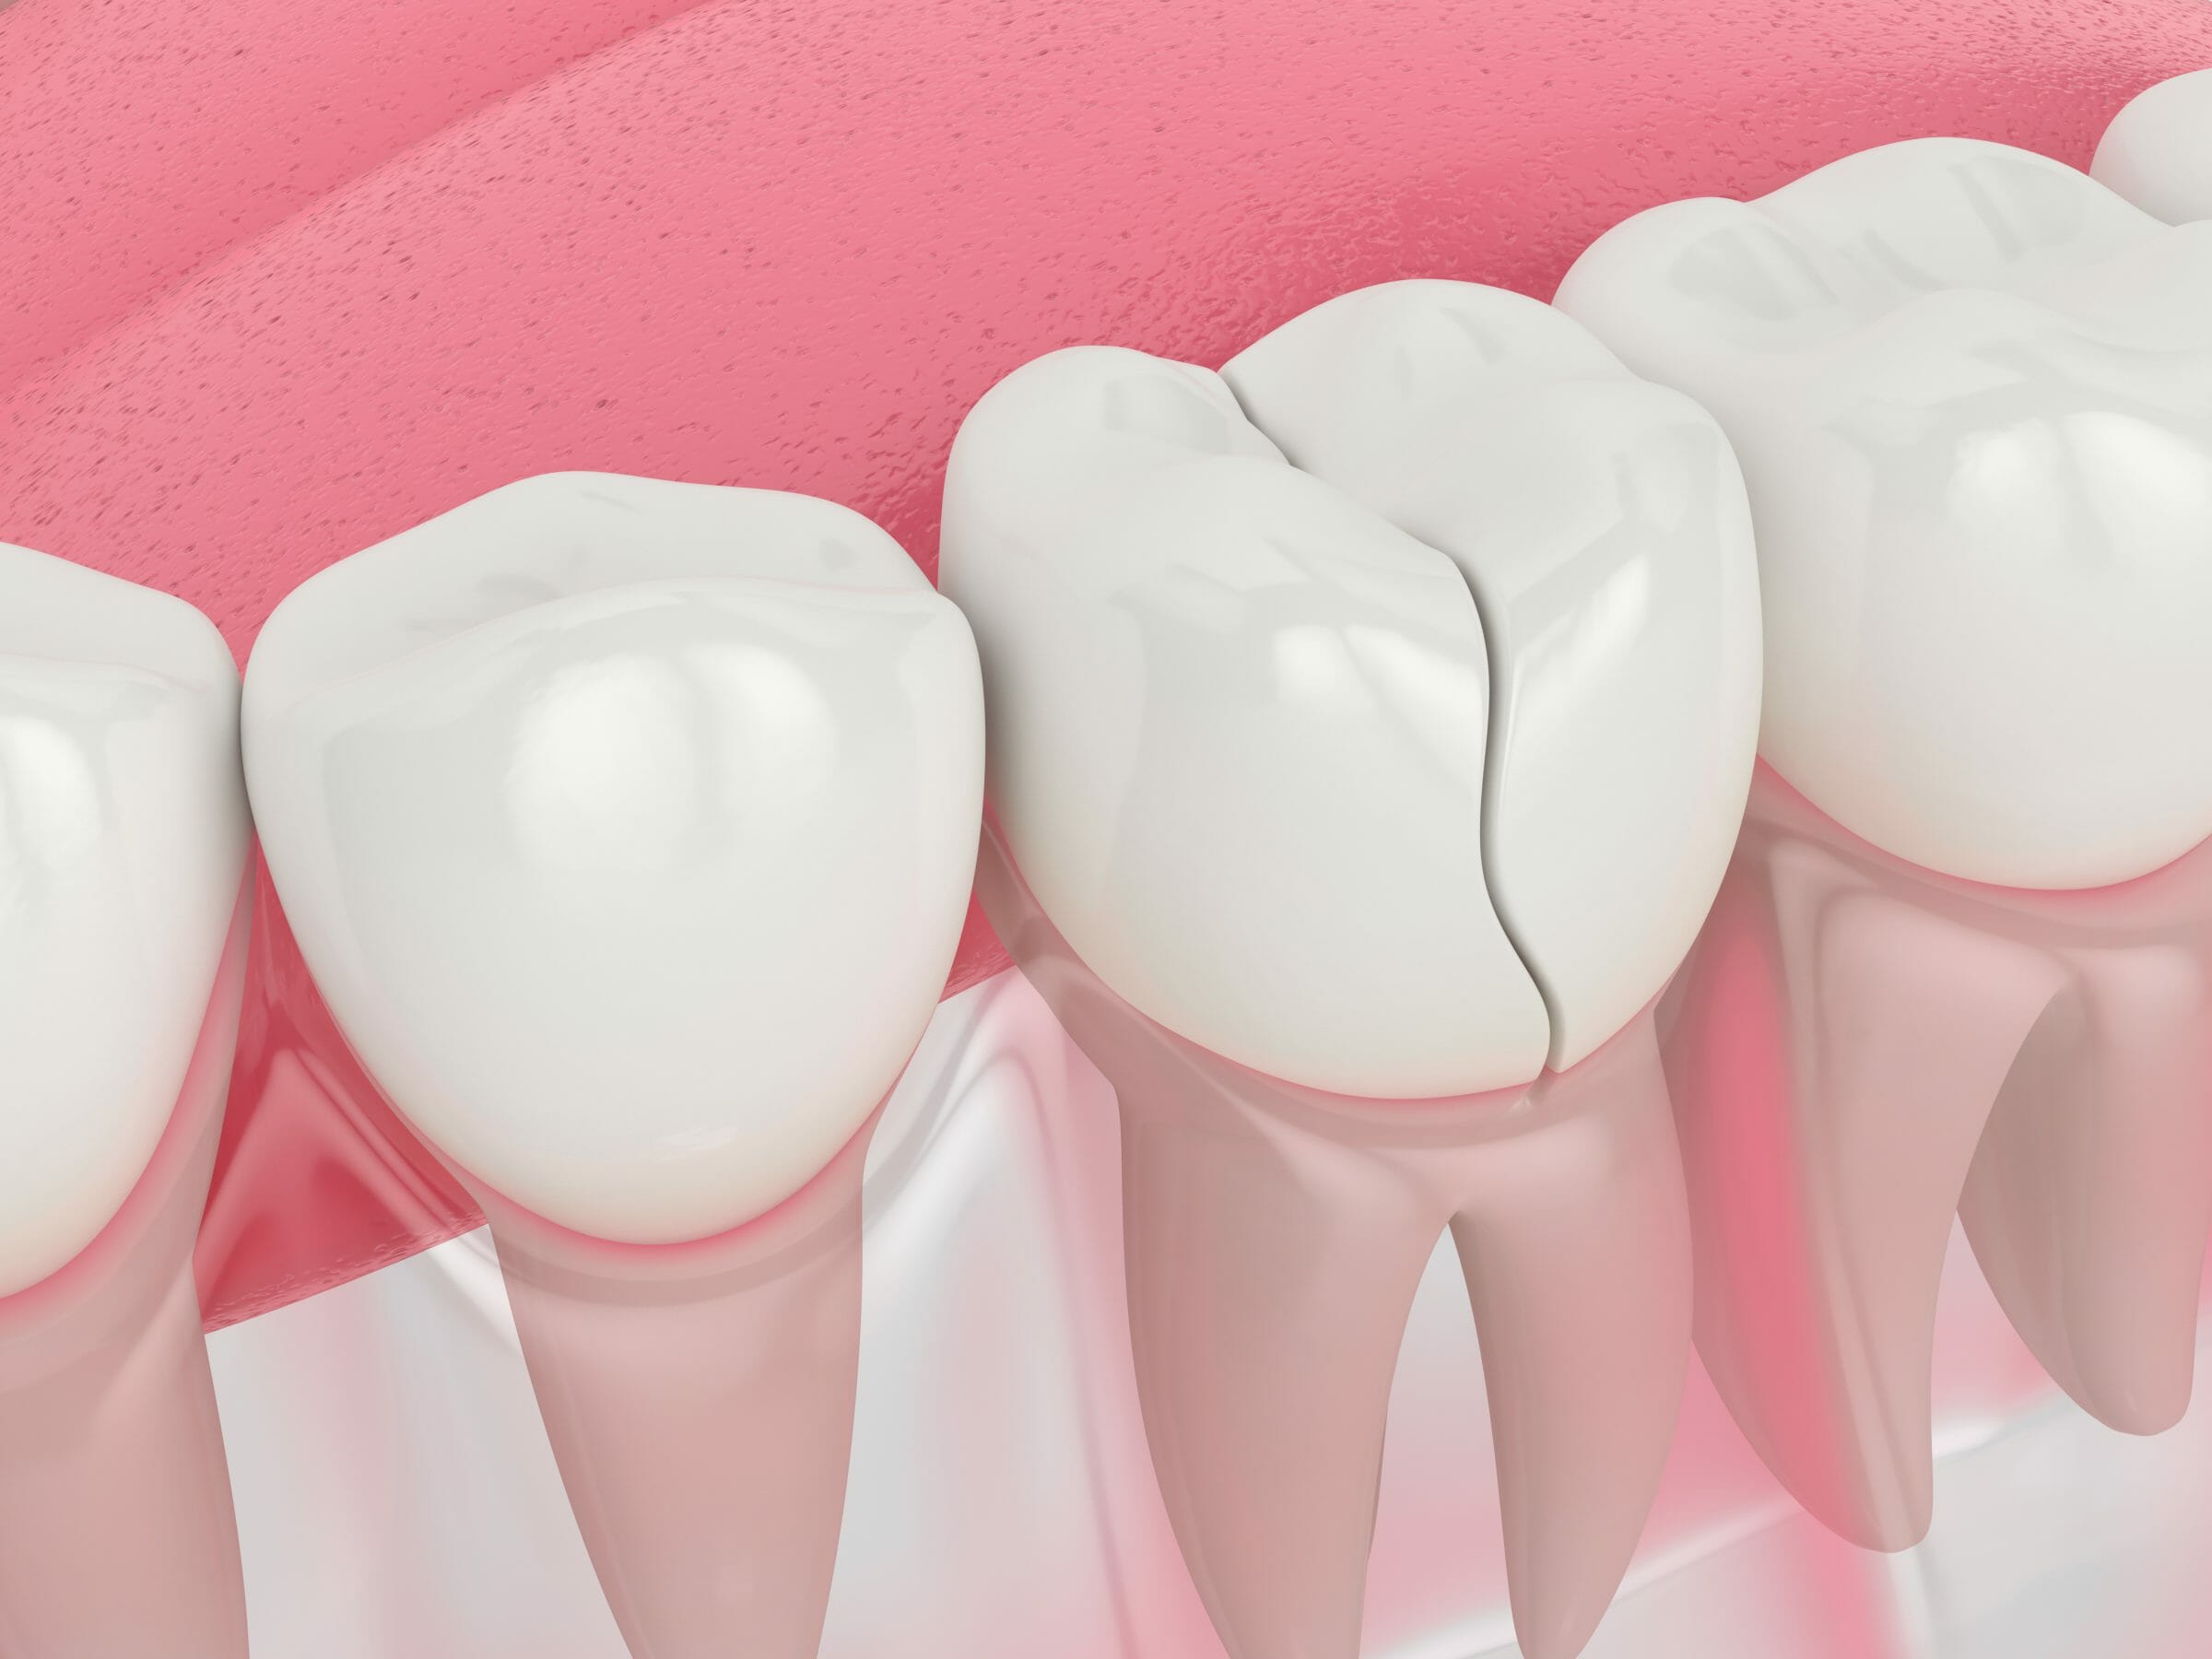 Procedures to Repair Your Cracked or Broken Tooth